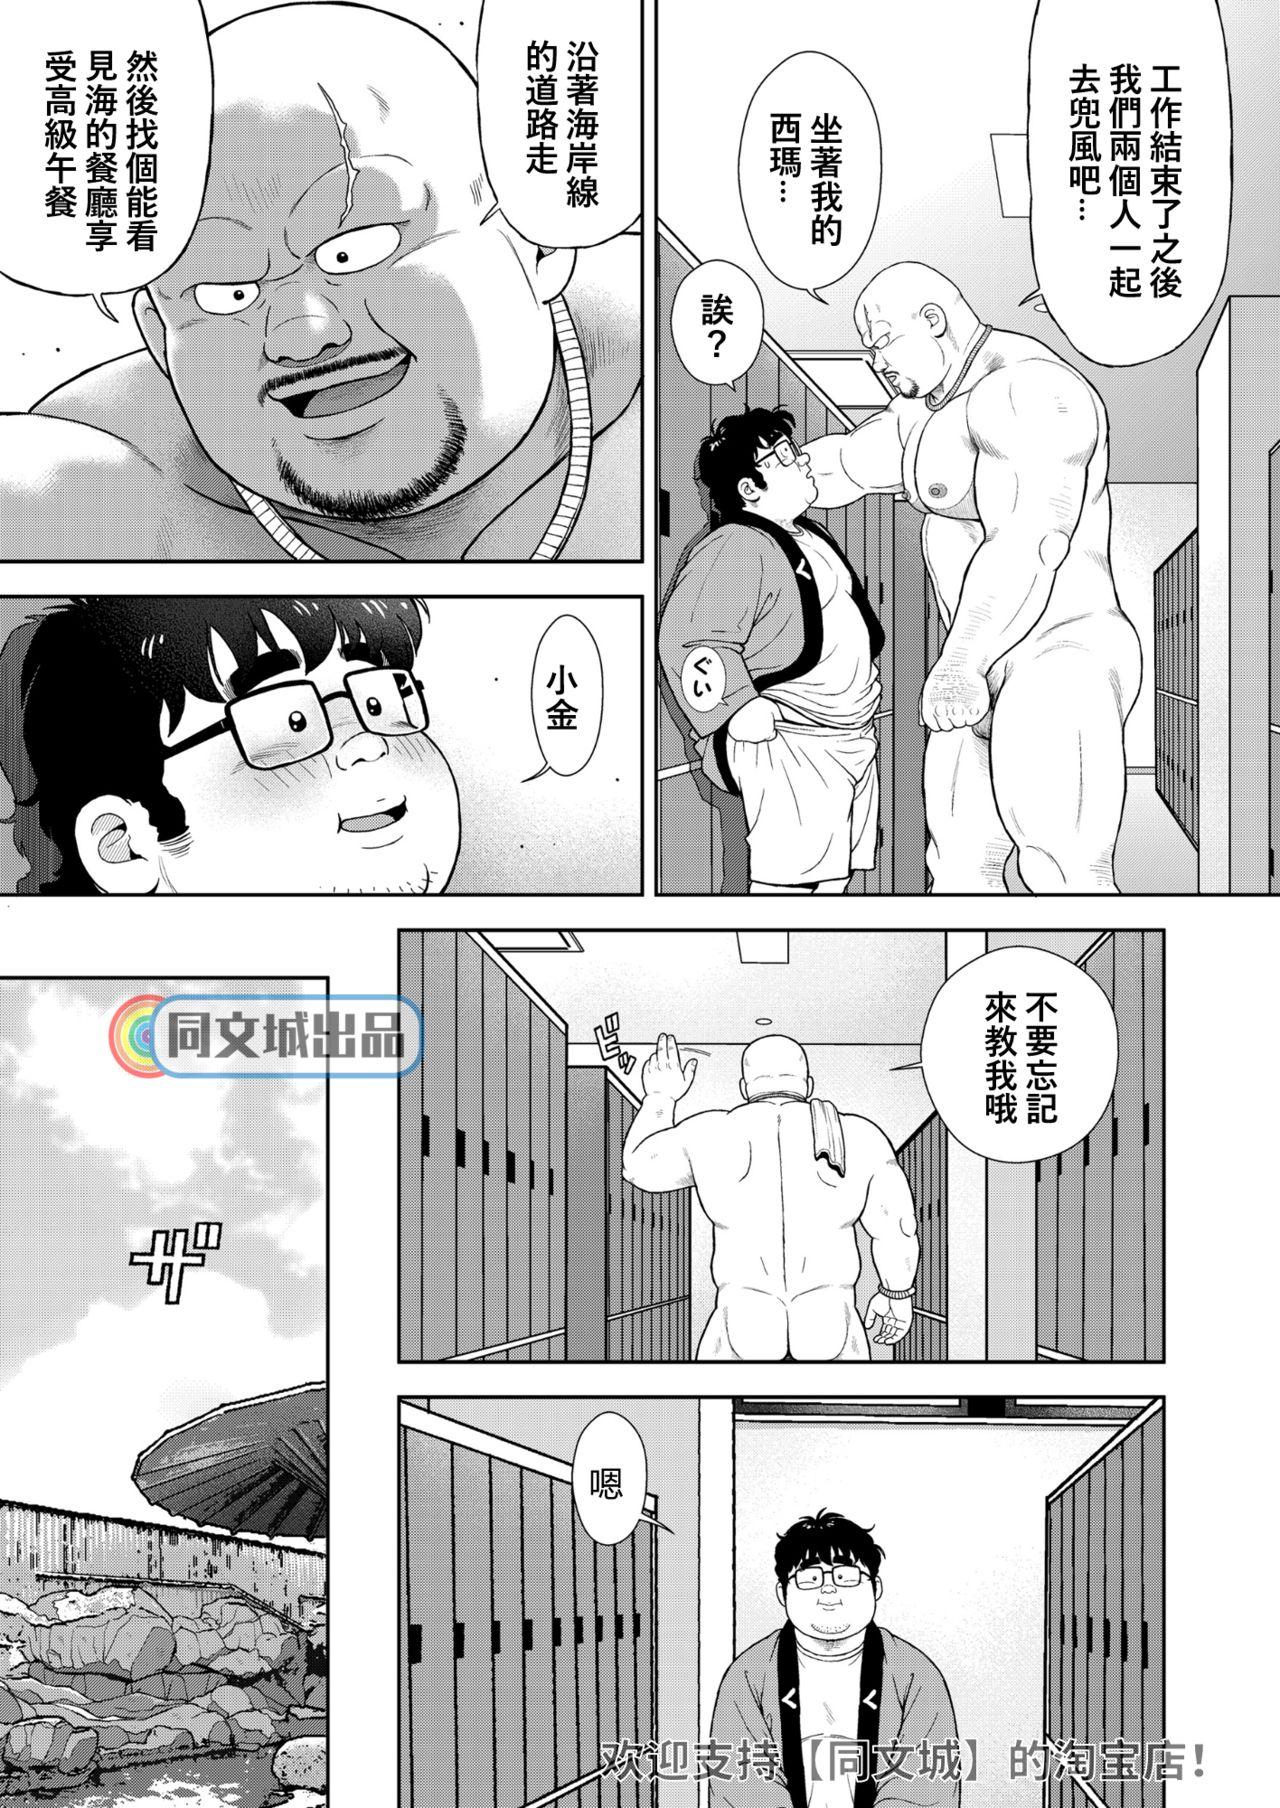 Tinder Kunoyu Juuyonhatsume Makyuu de Otose Porno 18 - Page 7